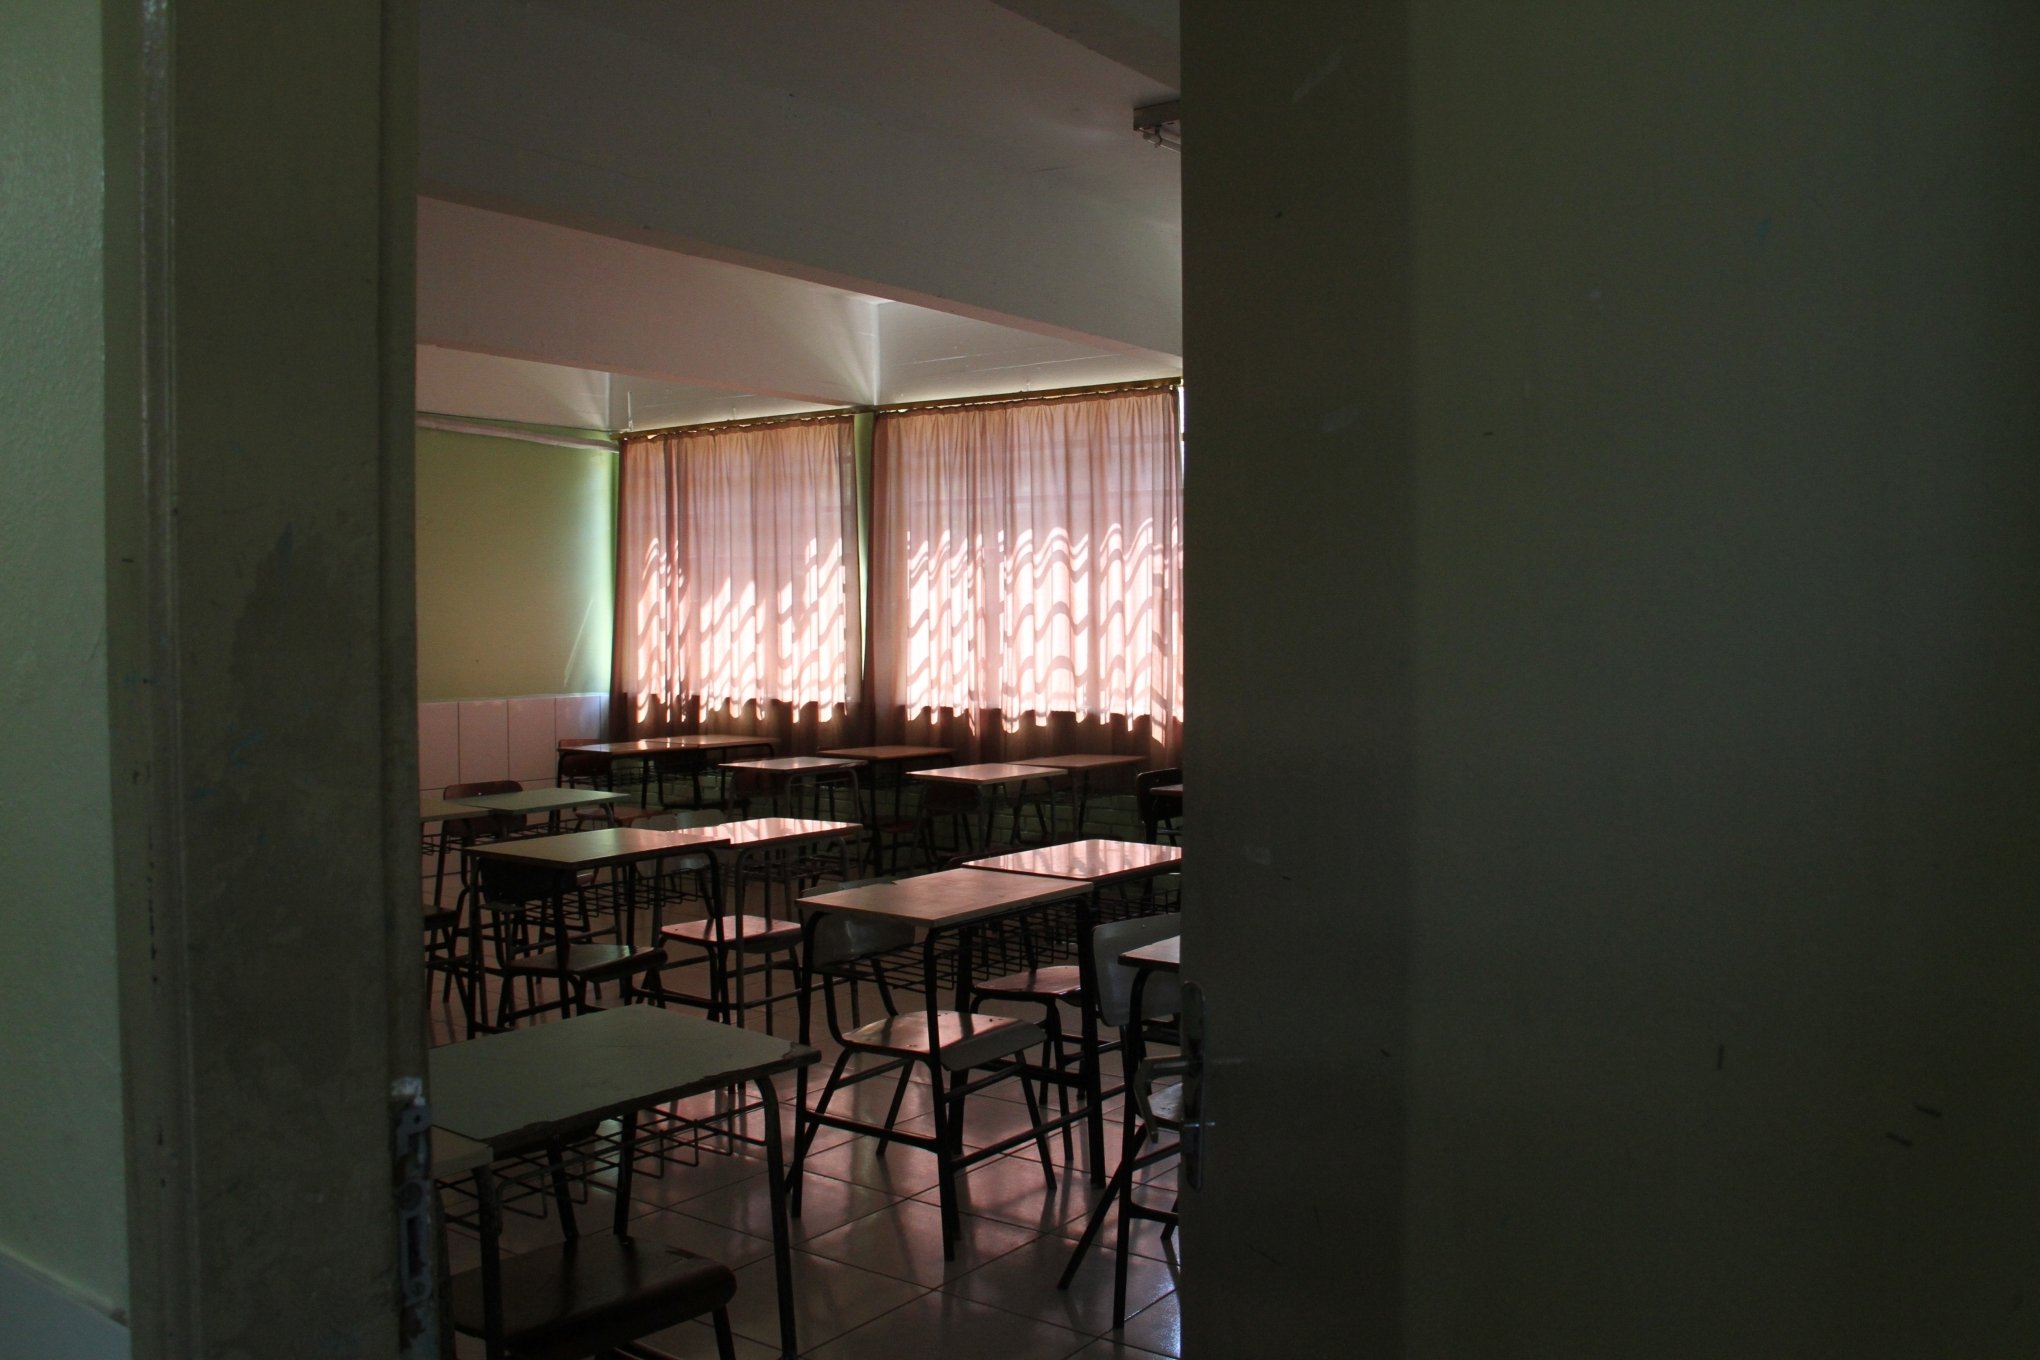  CATÁSTROFE NO RS: Sinepe orienta rede de ensino privado a manter suspensão de aulas até 18 de maio